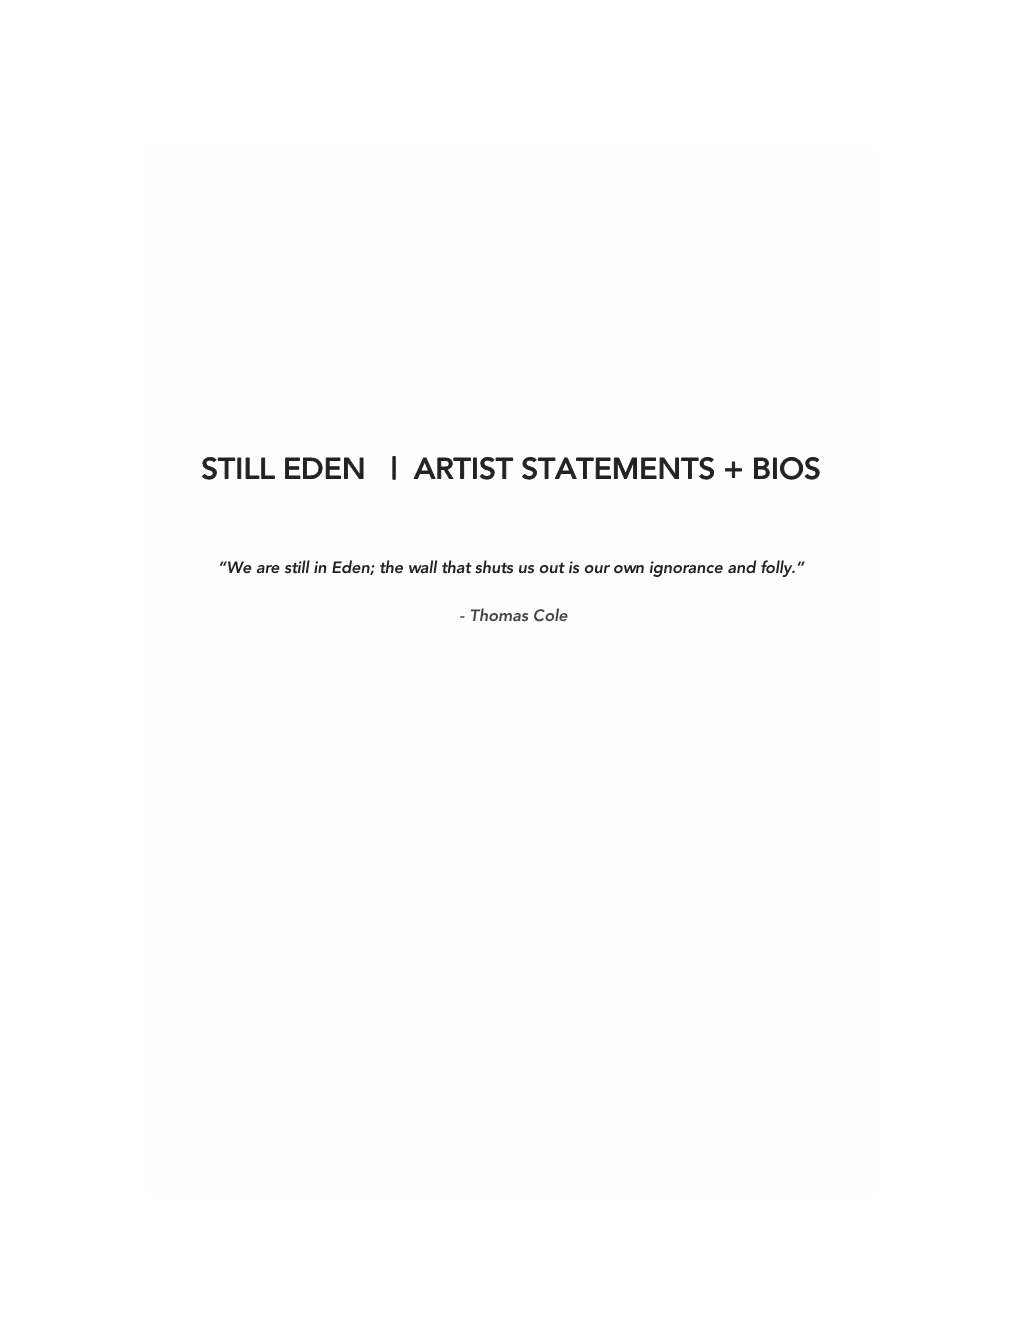 Still Eden | Artist Statements + Bios